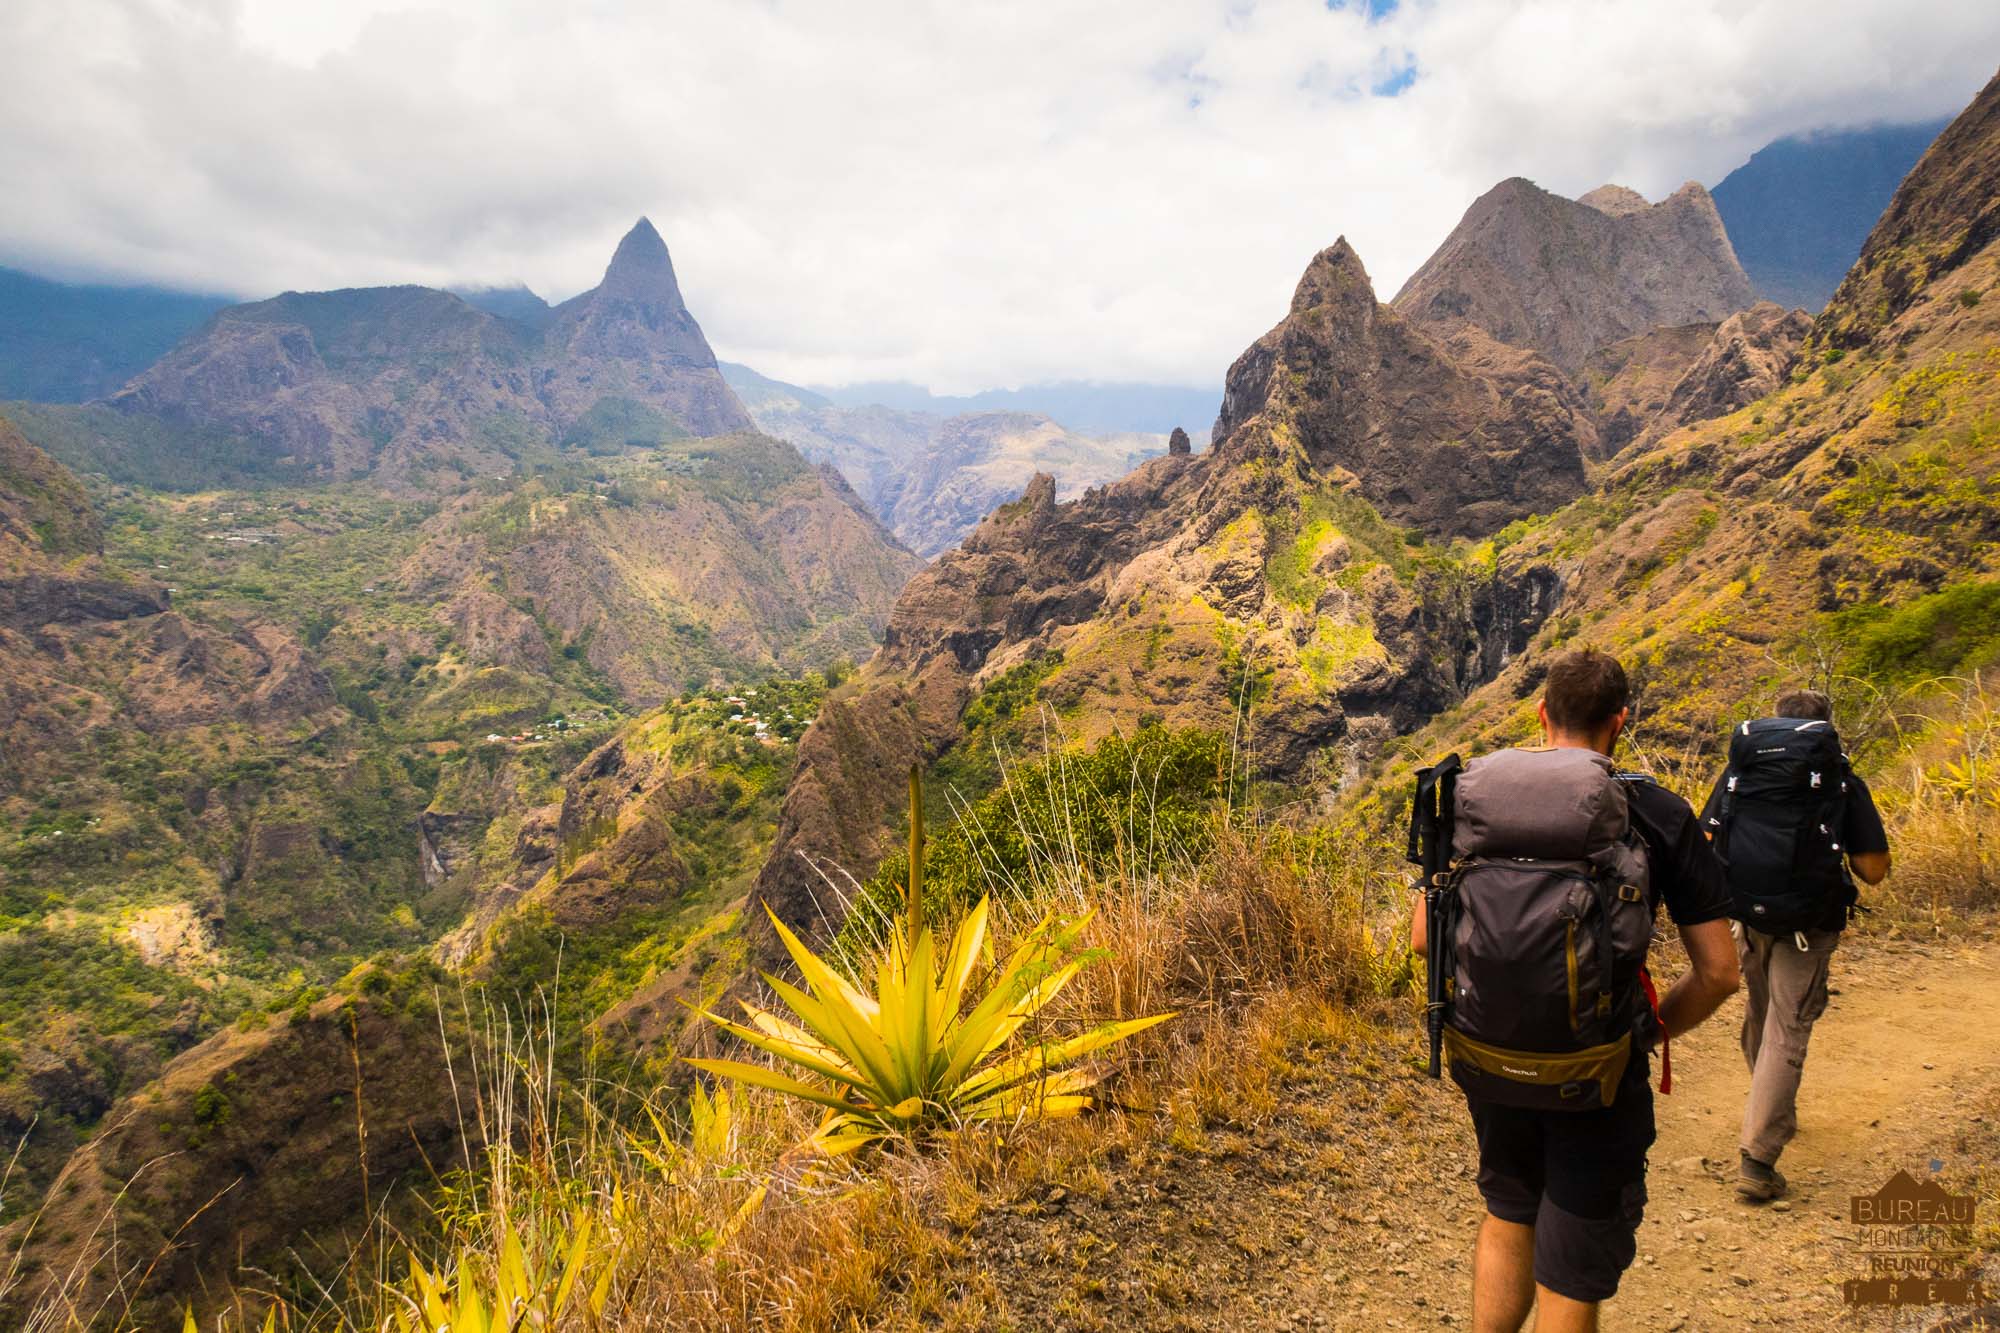 BMR Trek agence randonnée traversée de mafate la Réunion